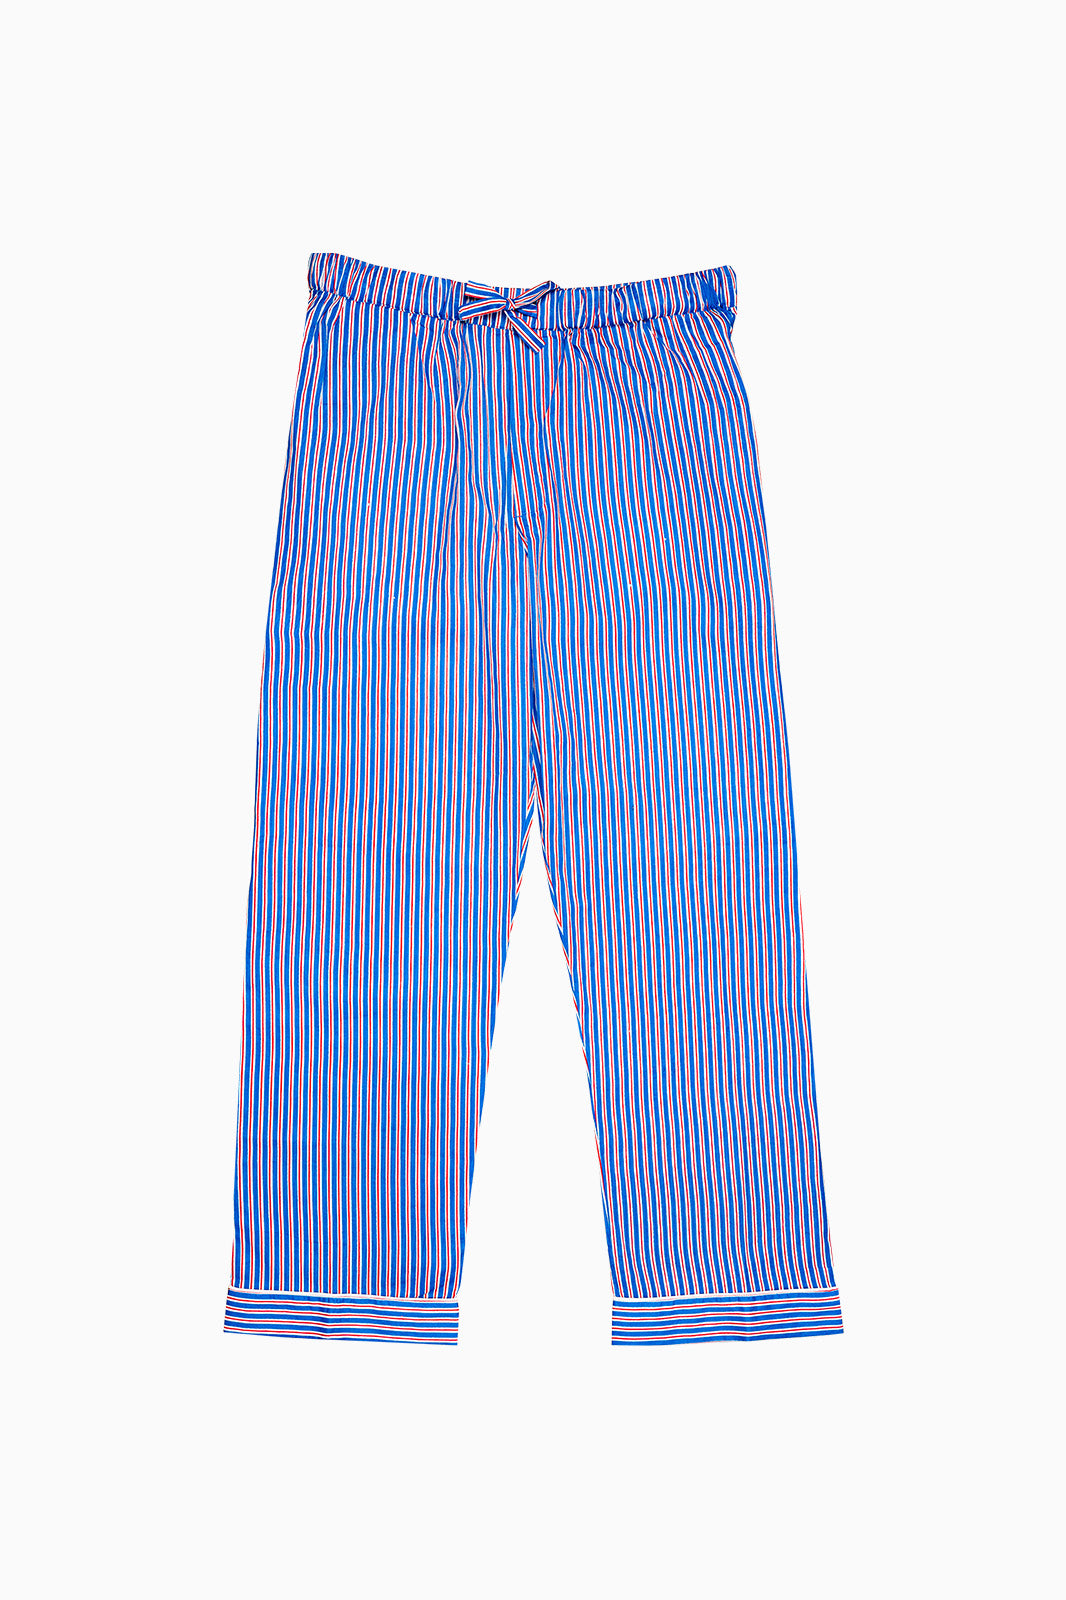 The Striped Pyjama Set